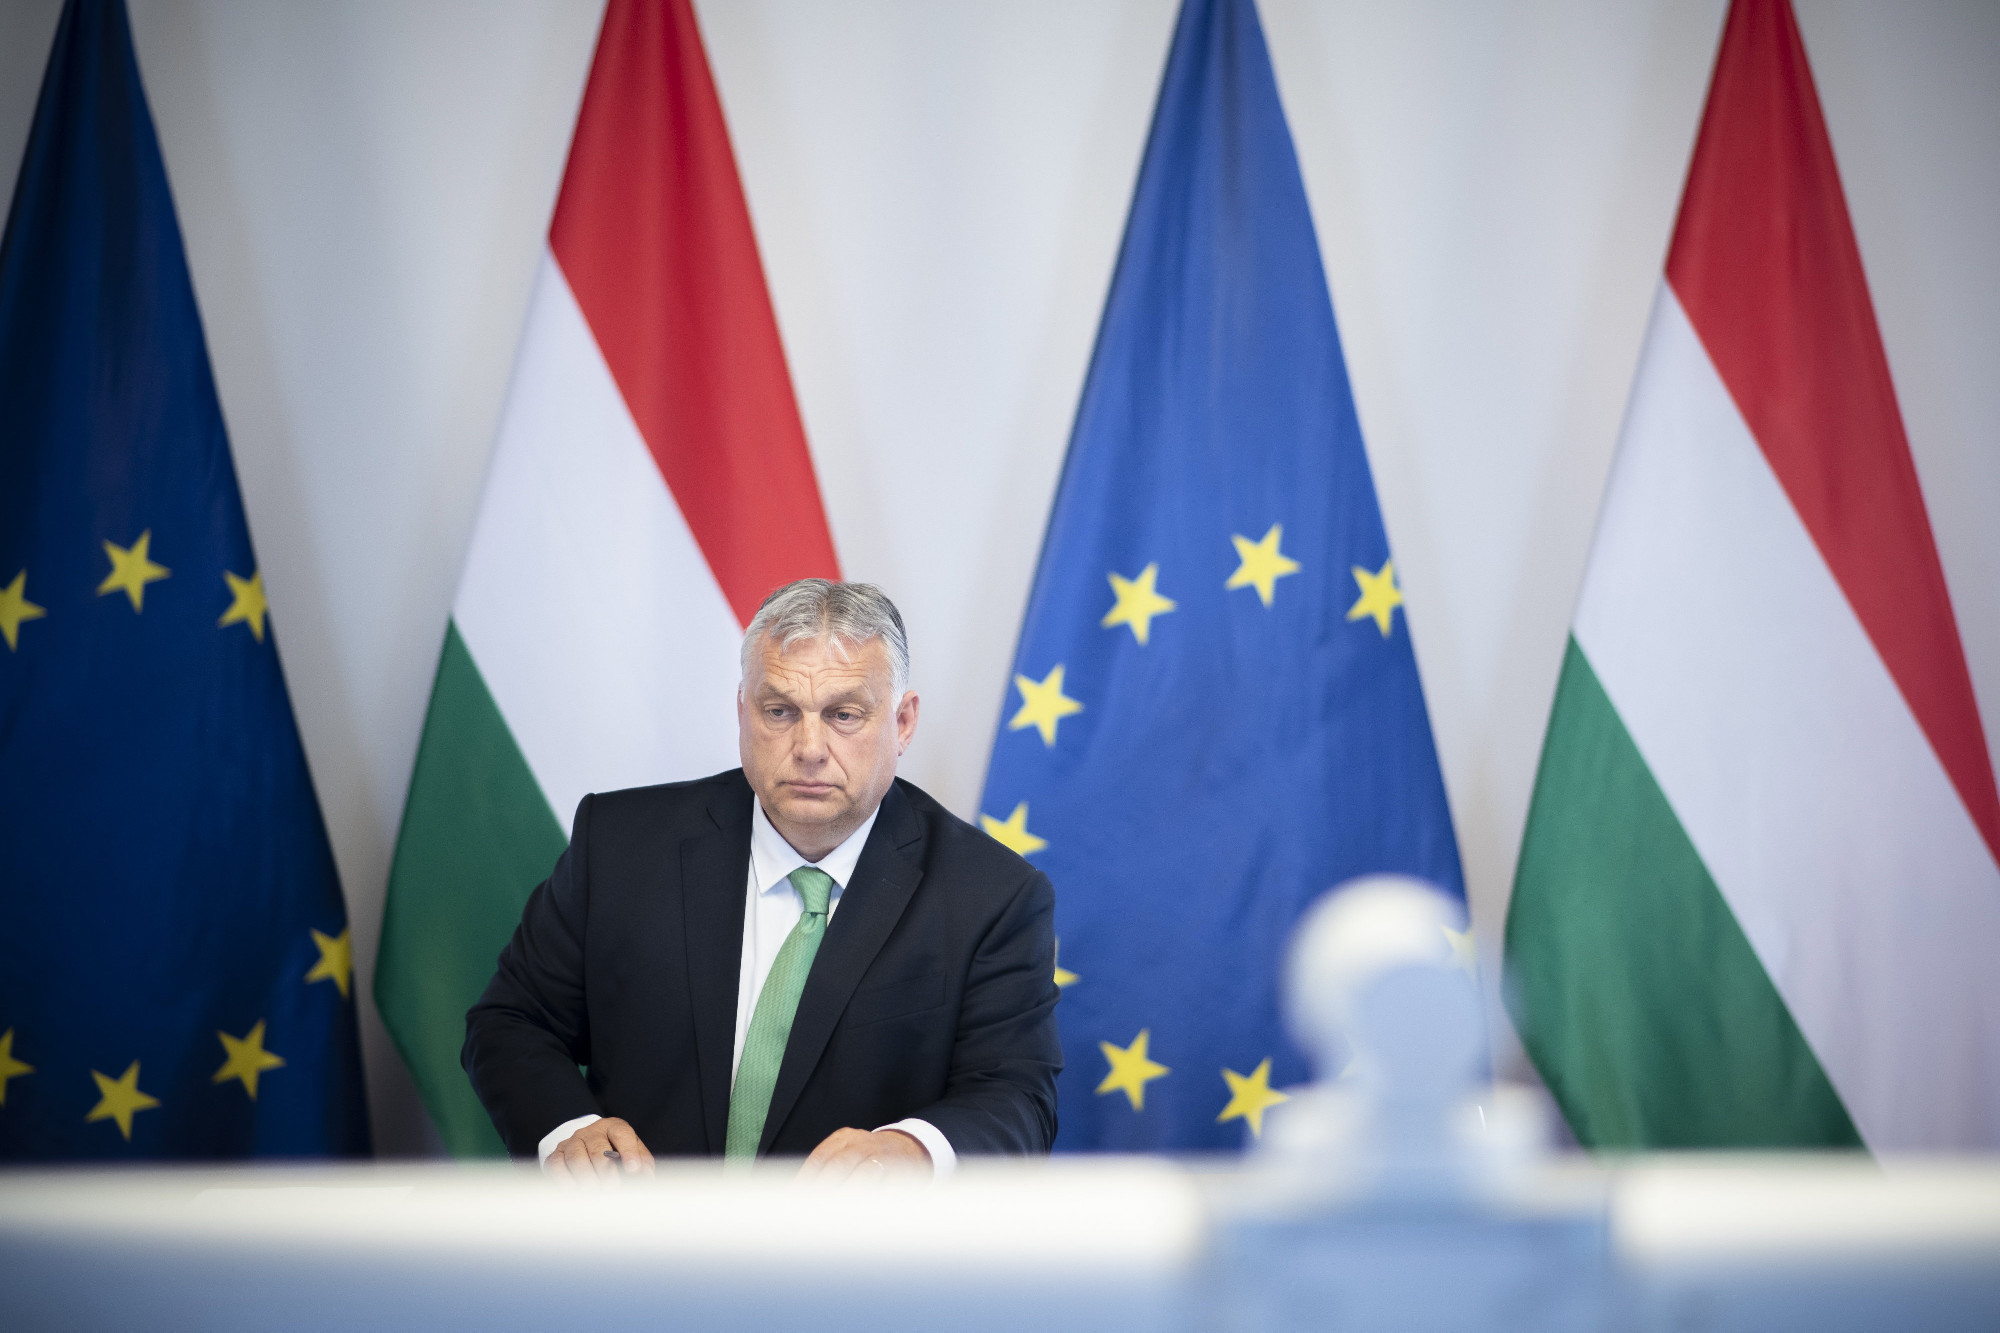 Orbán Viktor: Georgia és Bosznia is legyen EU-tagjelölt